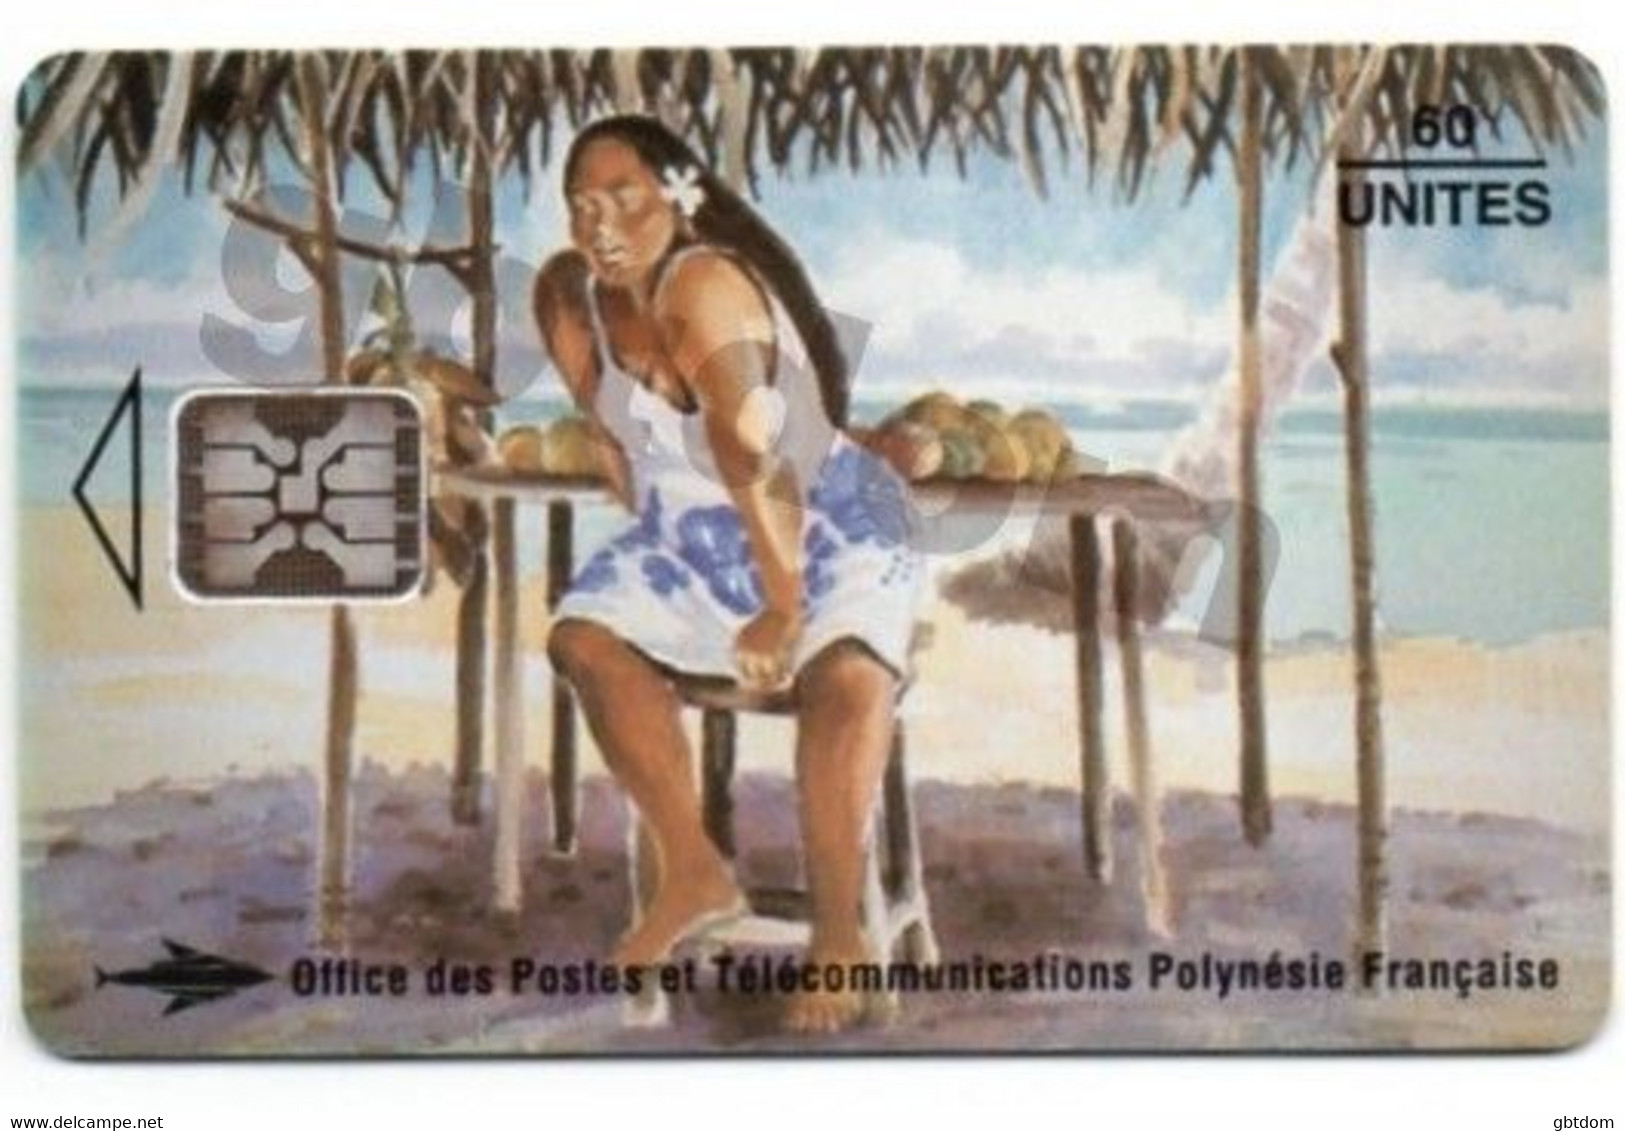 Magnifique Carte Téléphonique De TAHITI Polynésie Française - Vendeuse De Mangues - Erhard Lux - Sonstige - Ozeanien